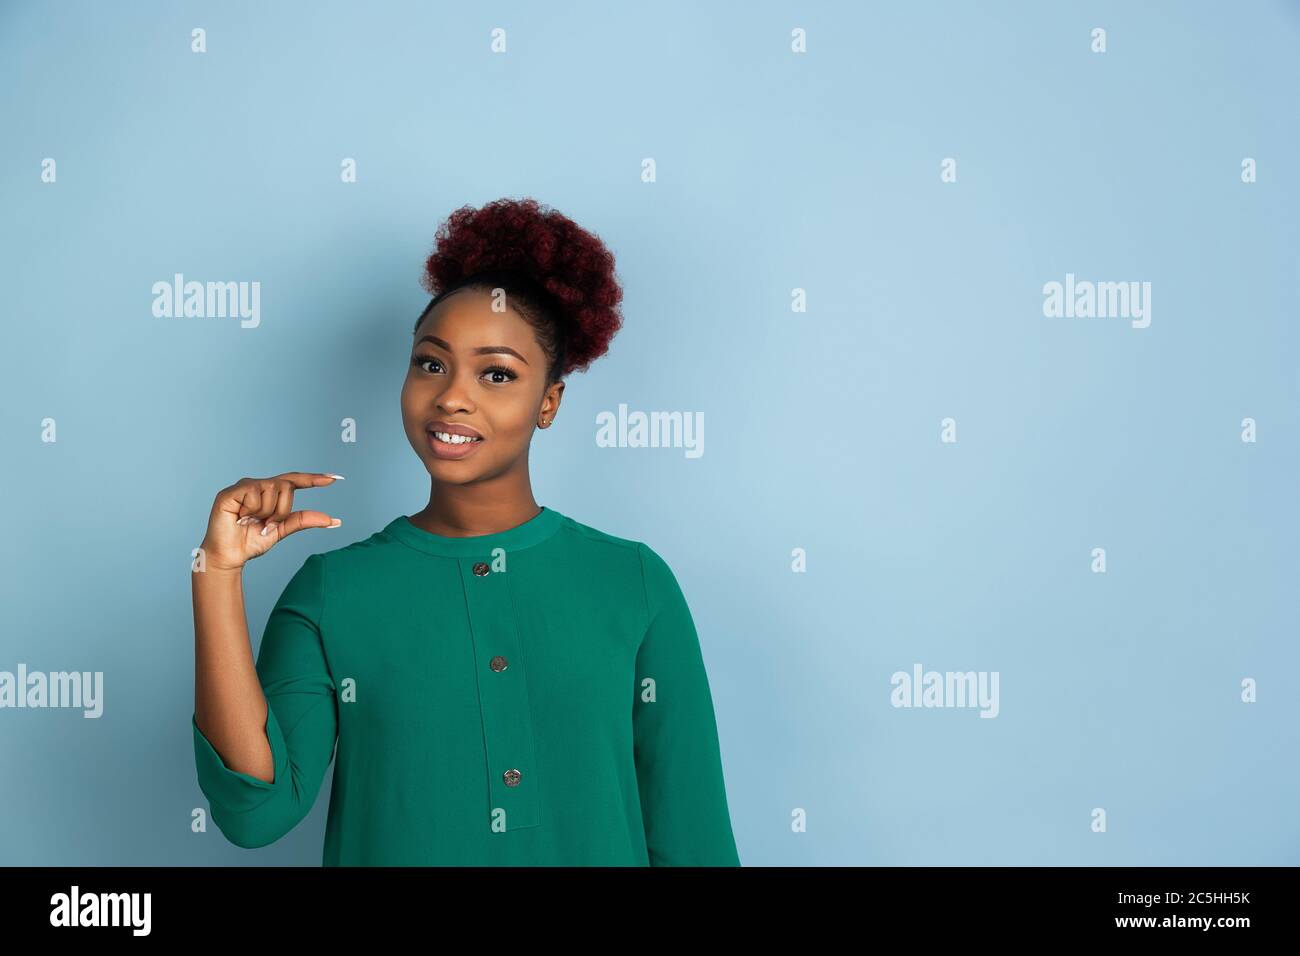 Etwas kleines zeigen. afroamerikanische junge Frau Porträt isoliert auf blauem Studio-Hintergrund. Schönes weibliches Modell. Konzept der menschlichen Emotionen, Gesichtsausdruck, Verkauf, Anzeige. Copyspace. Stockfoto